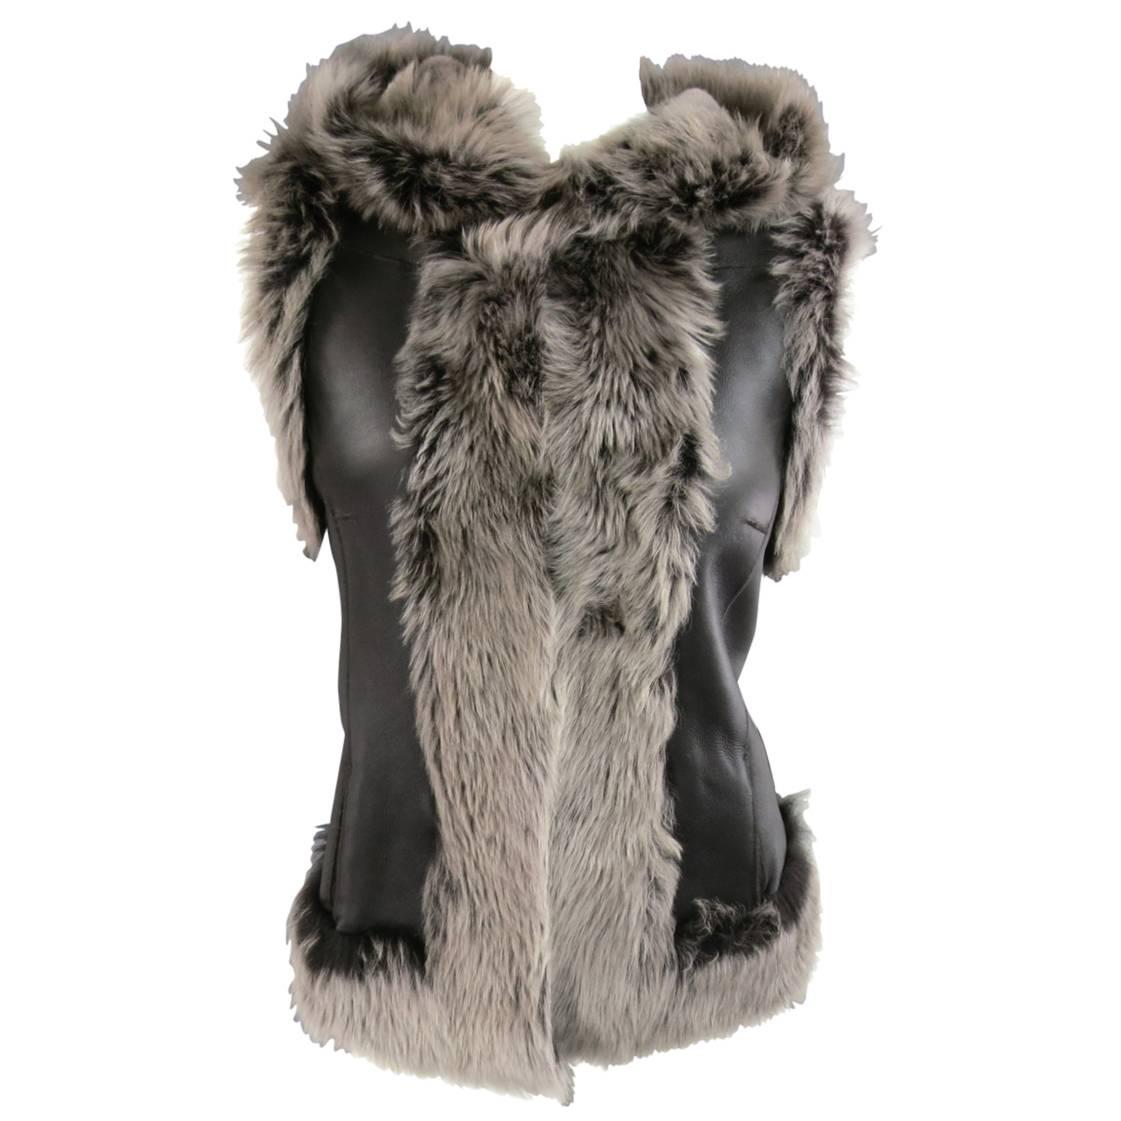 ROSENBERG & LENHART Size 8 Gray & Black Hooded Lamb Fur Shearling Leather Vest